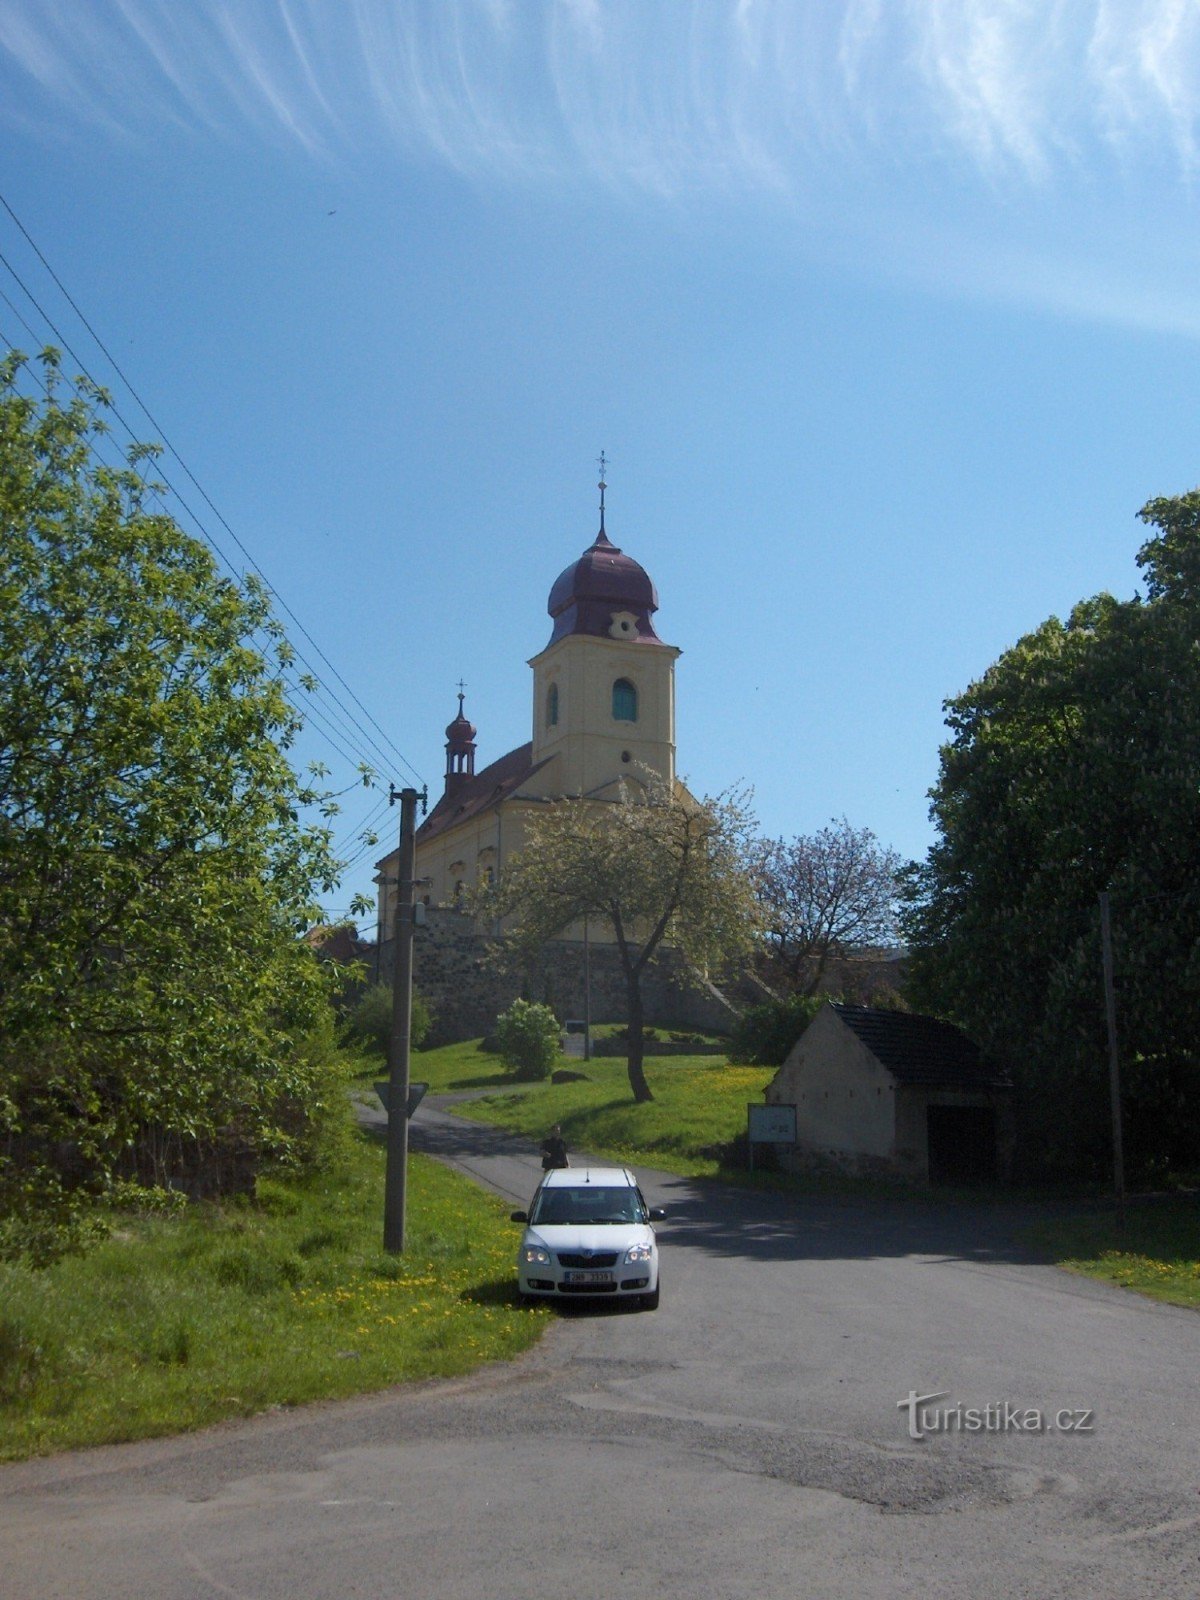 聖プロコップ教会